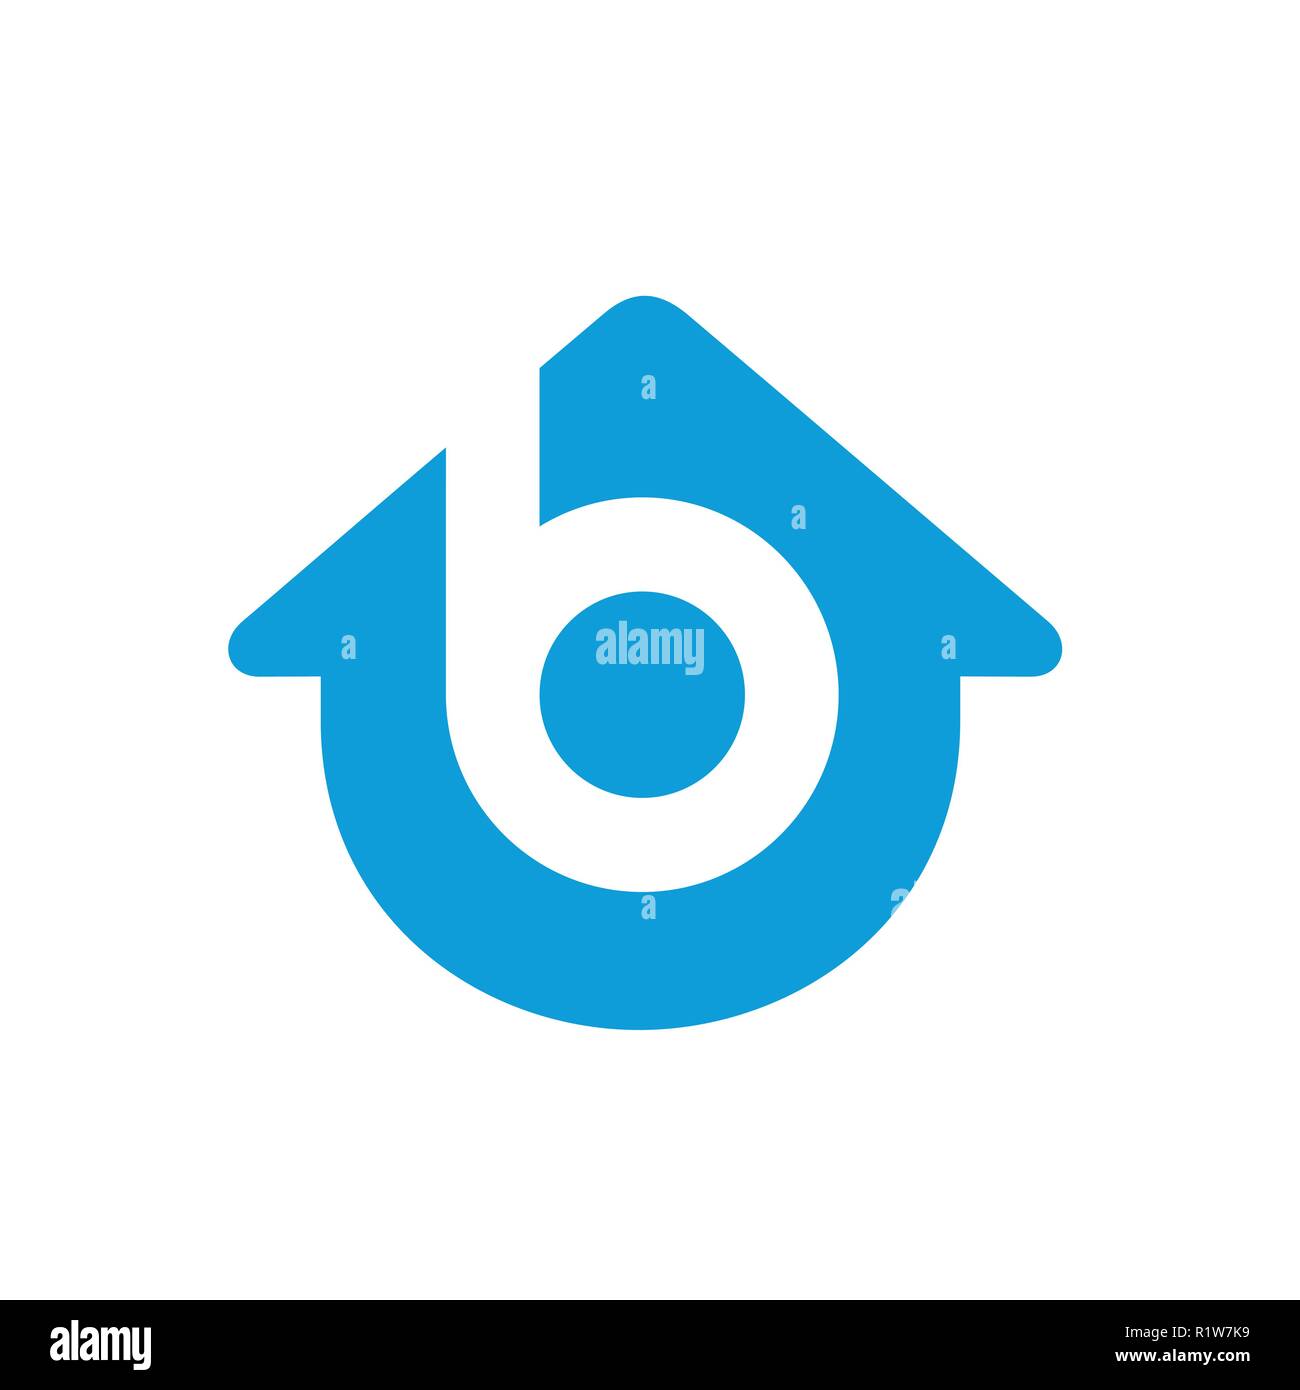 Lettre B Accueil Logo. Sweet Home Modèle Logo est principalement adapté pour tout ce qui concerne l'immobilier, amélioration de l'habitat, studio, équipe, etc. fait fr Illustration de Vecteur